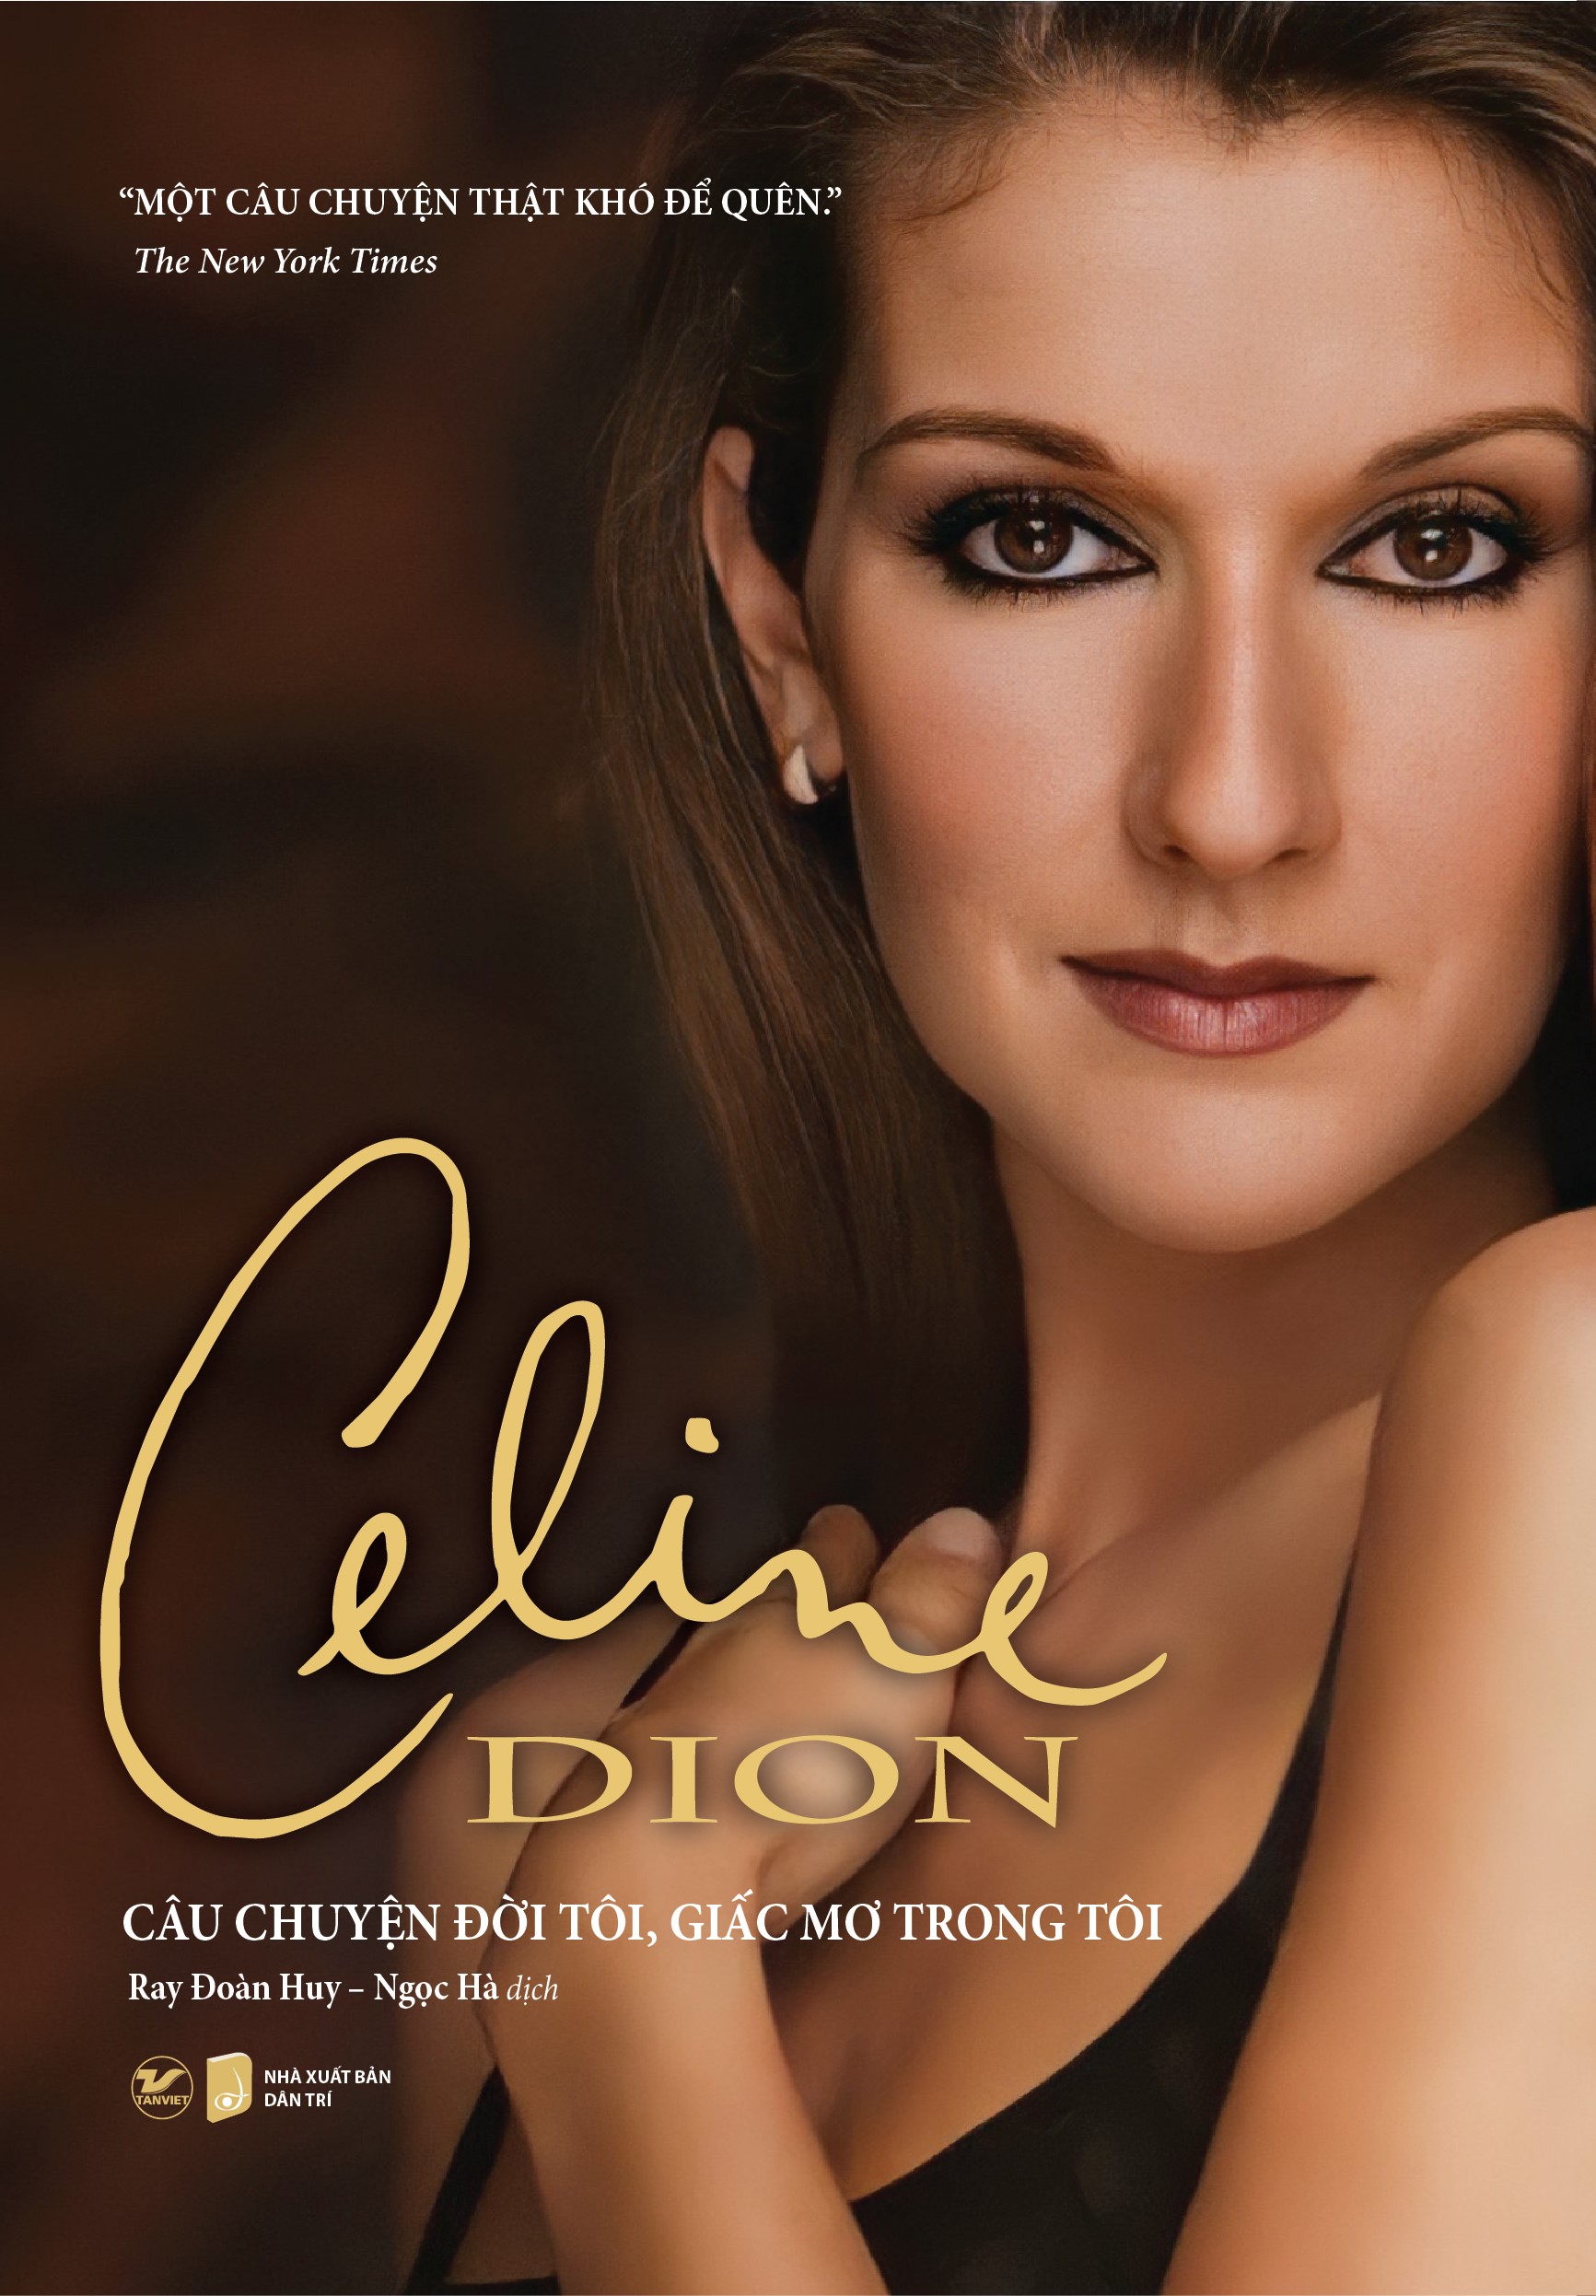 Celine Dion - Câu Chuyện Đời Tôi, Giấc Mơ Trong Tôi (Bản đặc biệt tặng kèm túi giấy Meggy + 05 Postcard)